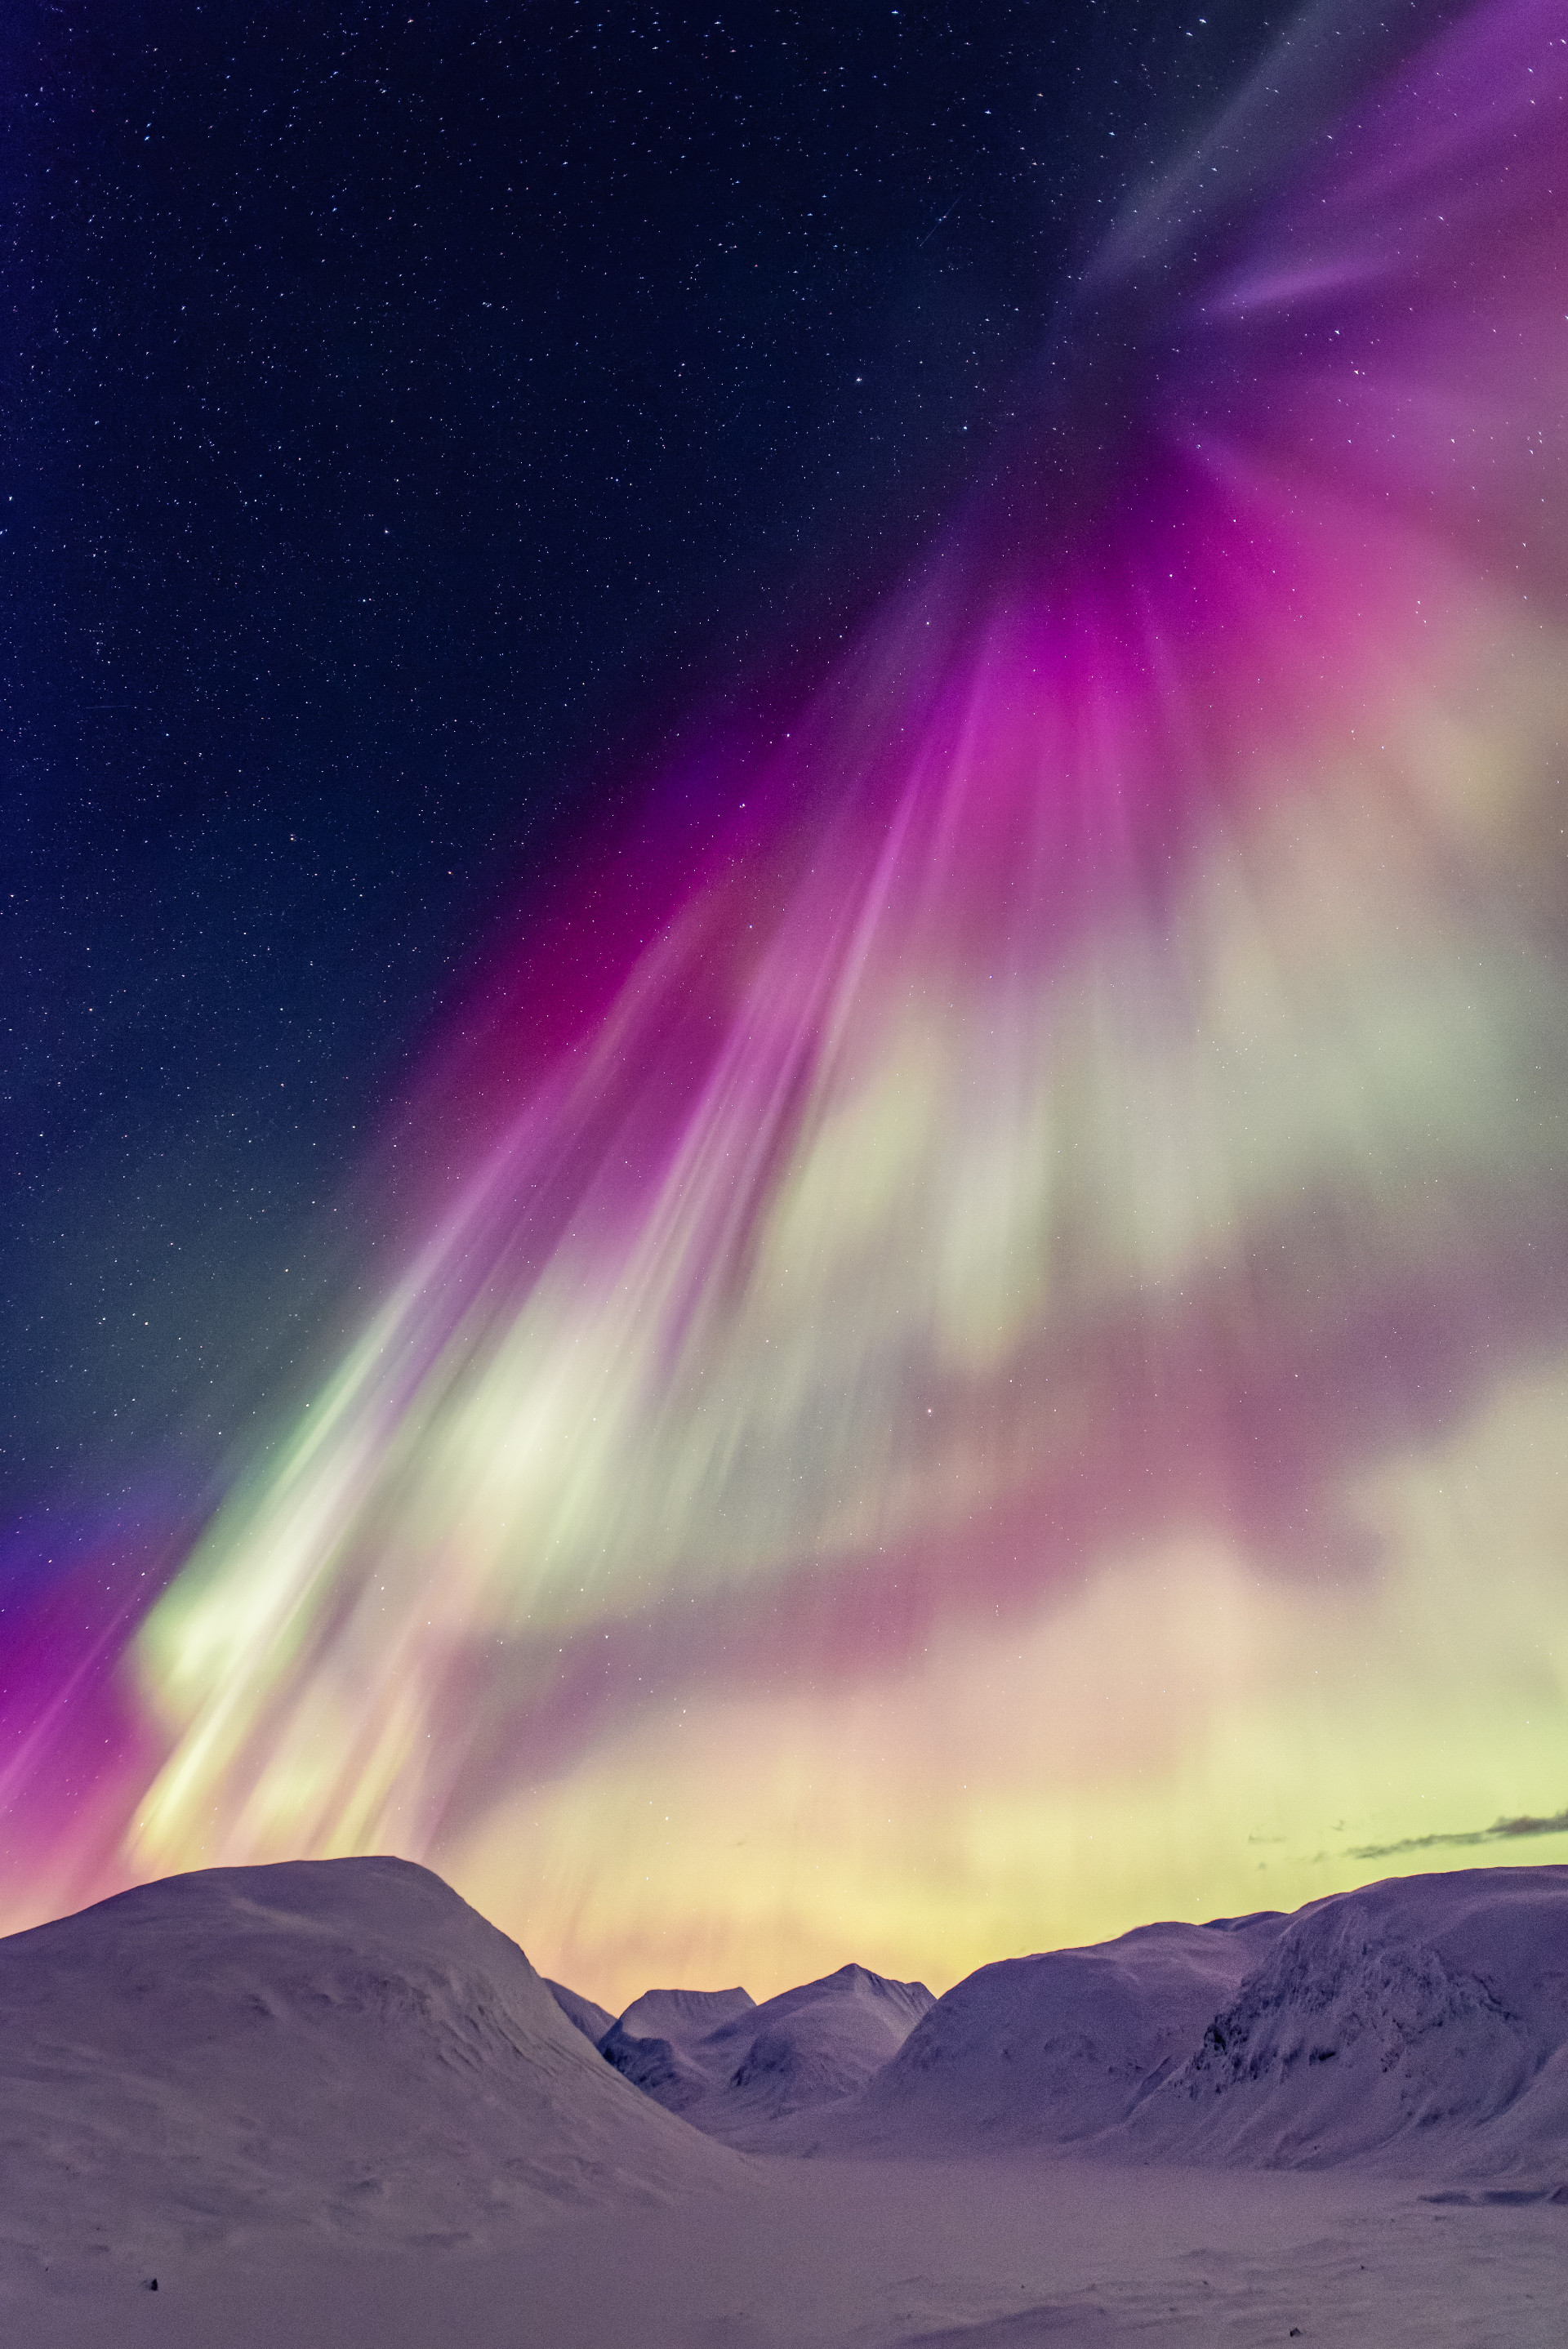 Où voir les aurores boréales durant un Voyage sur Mesure en Suède ?